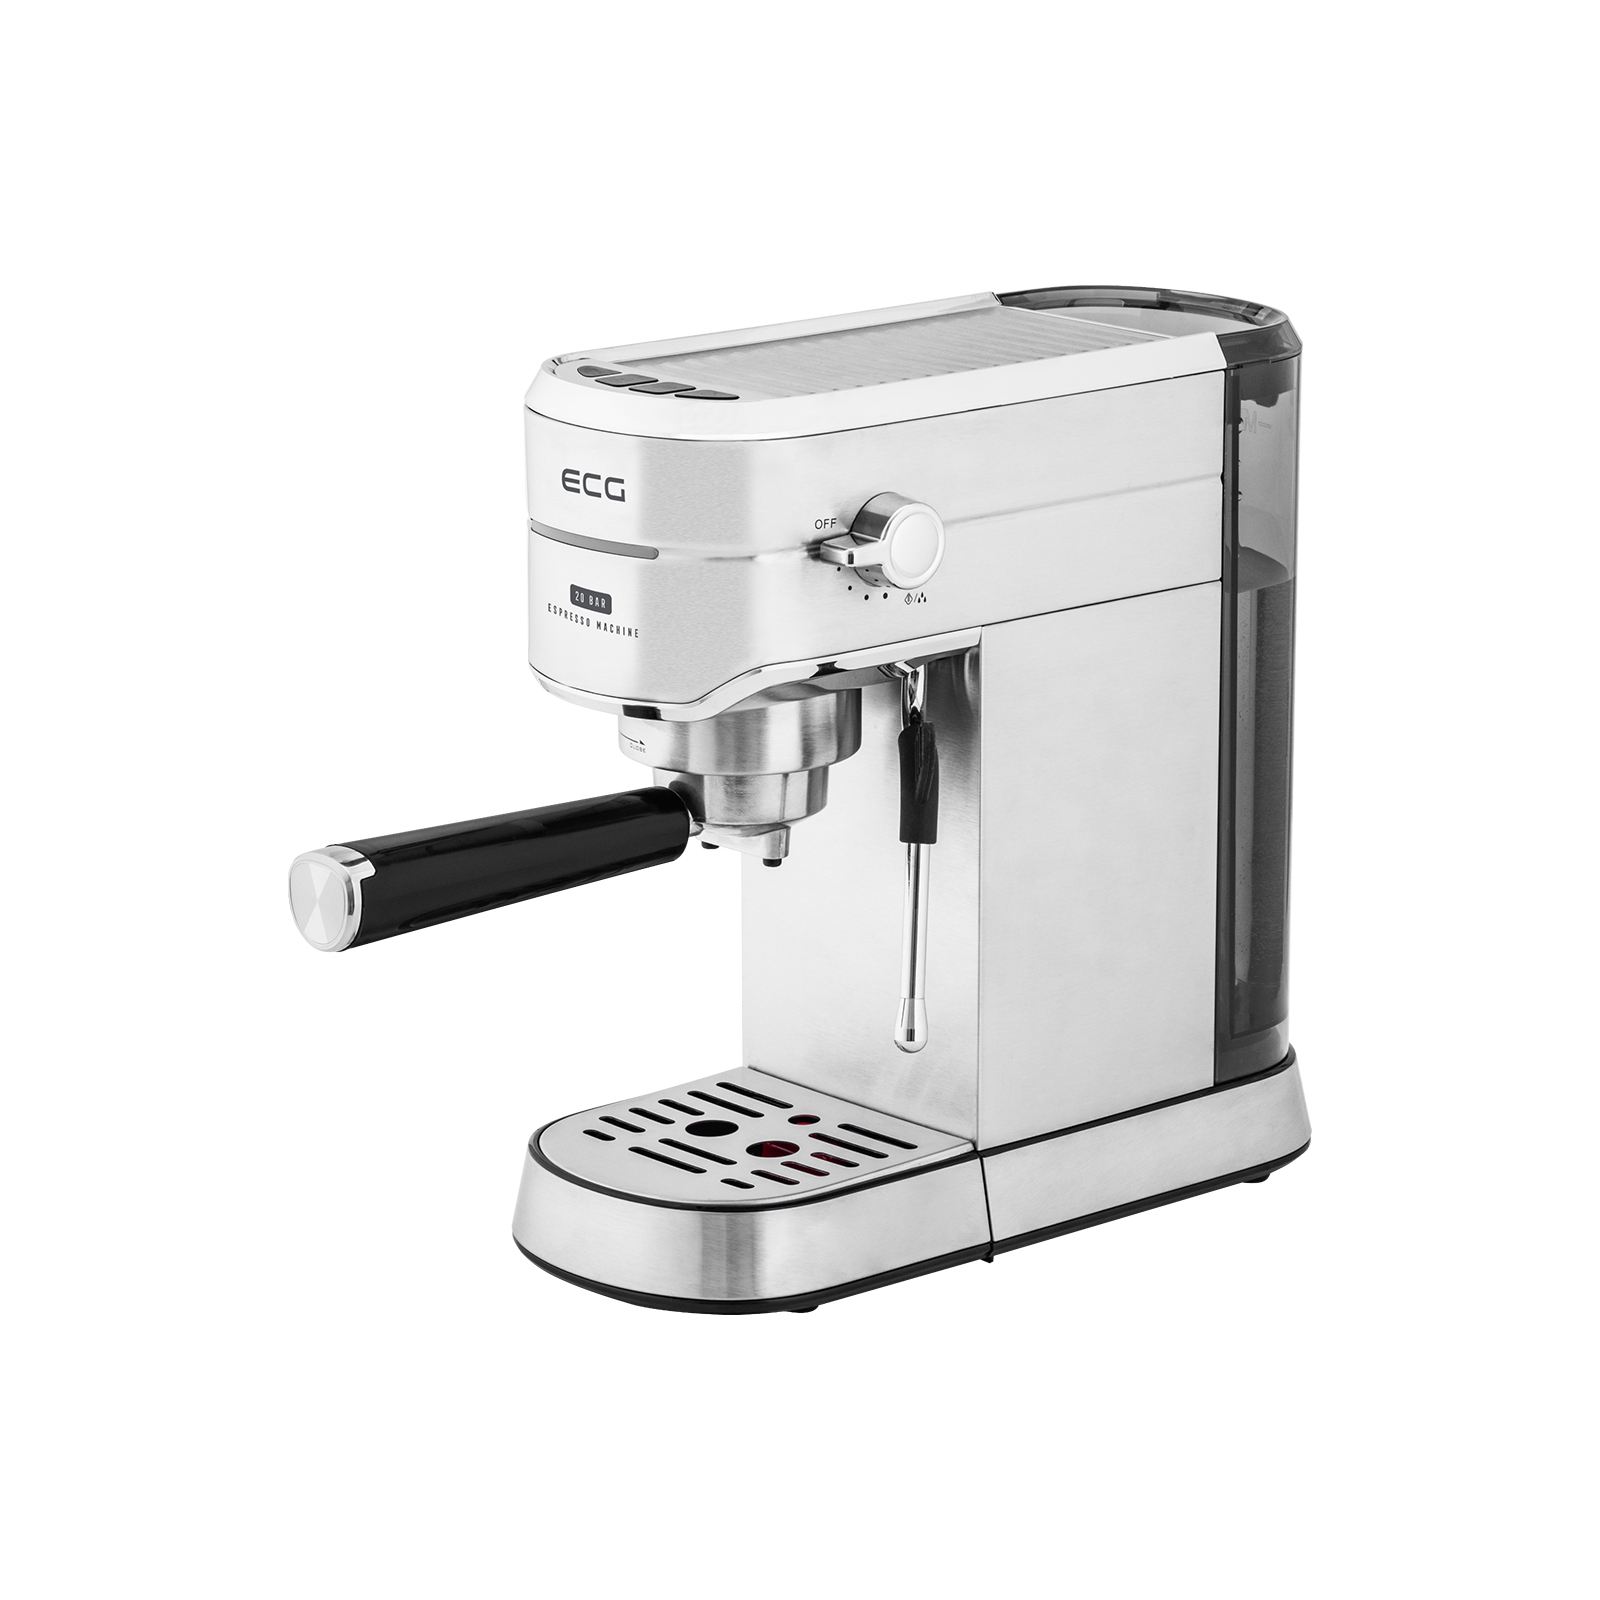 Рожковая кофеварка эспрессо ECG ESP 20501 Iron (ESP20501 Iron) изображение 2